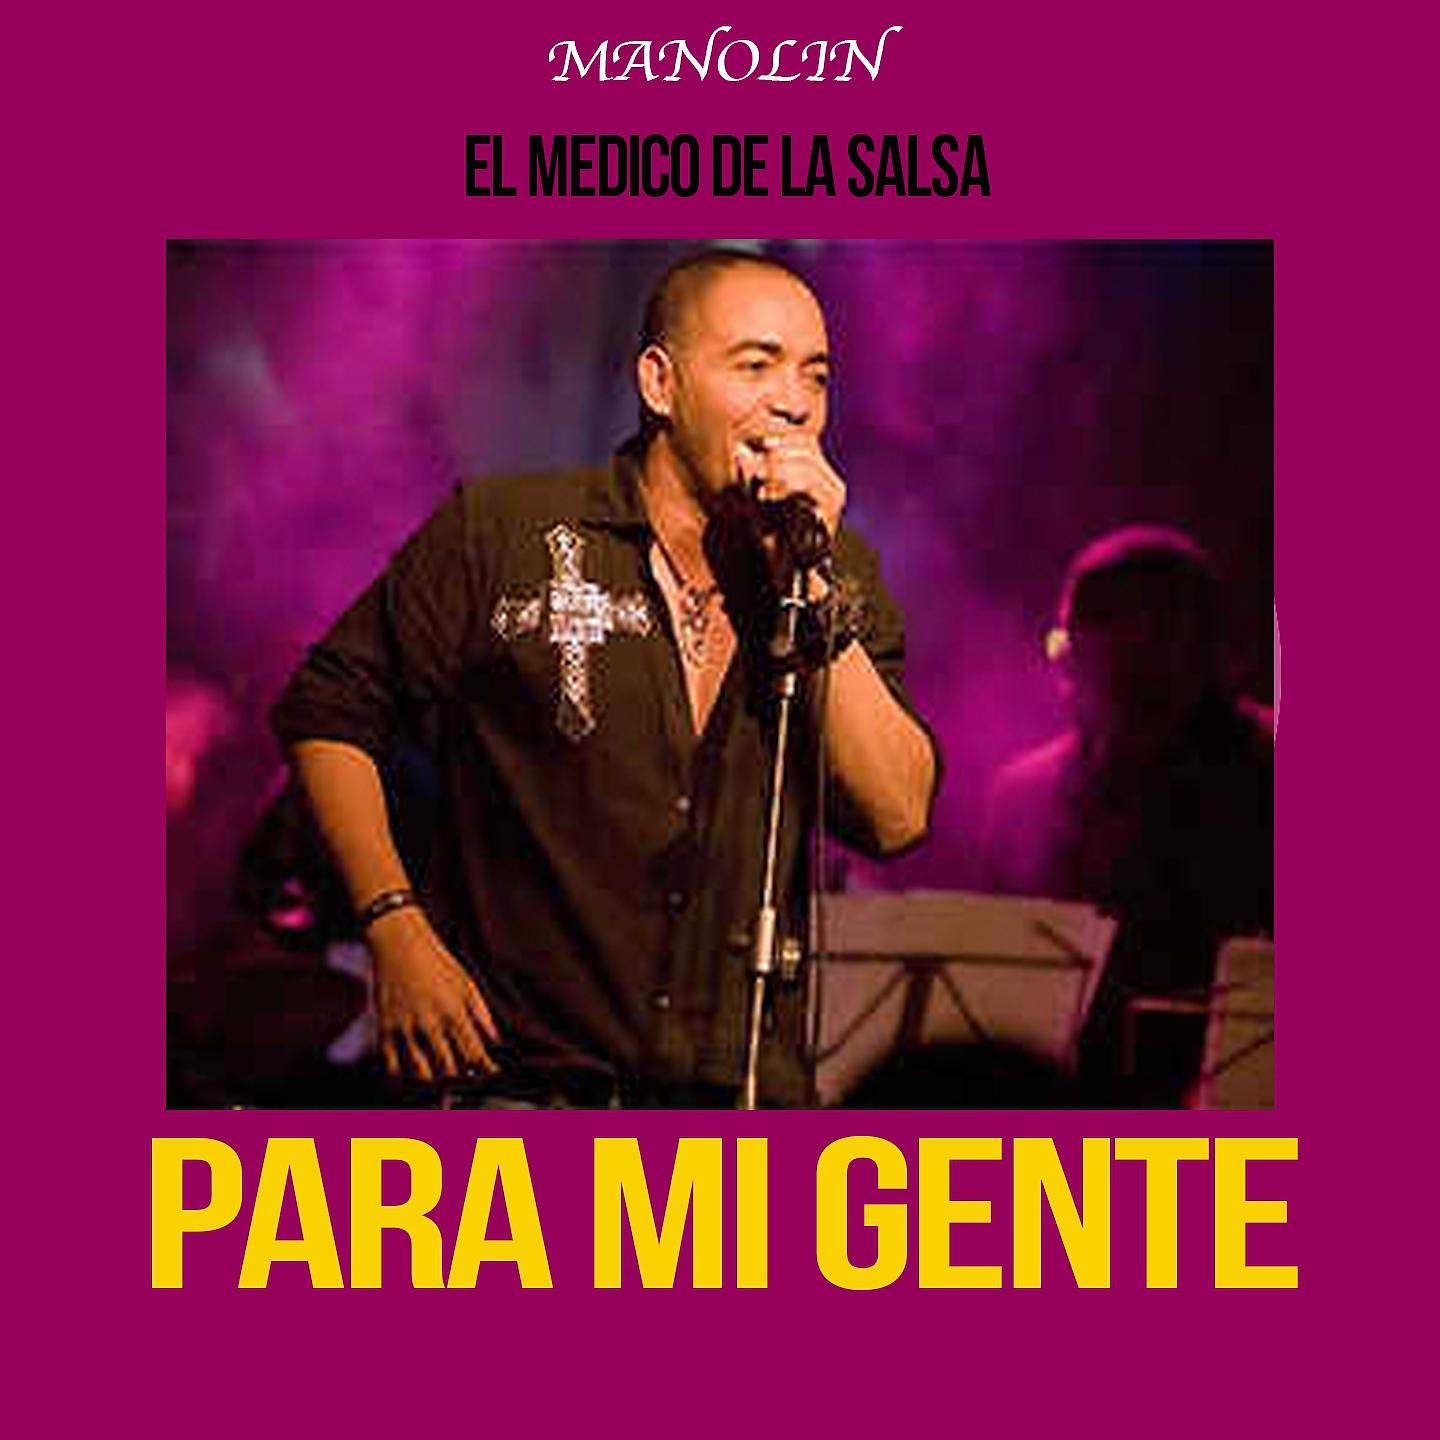 Постер альбома Manolín "El Médico de la Salsa"- Para Mi Gente